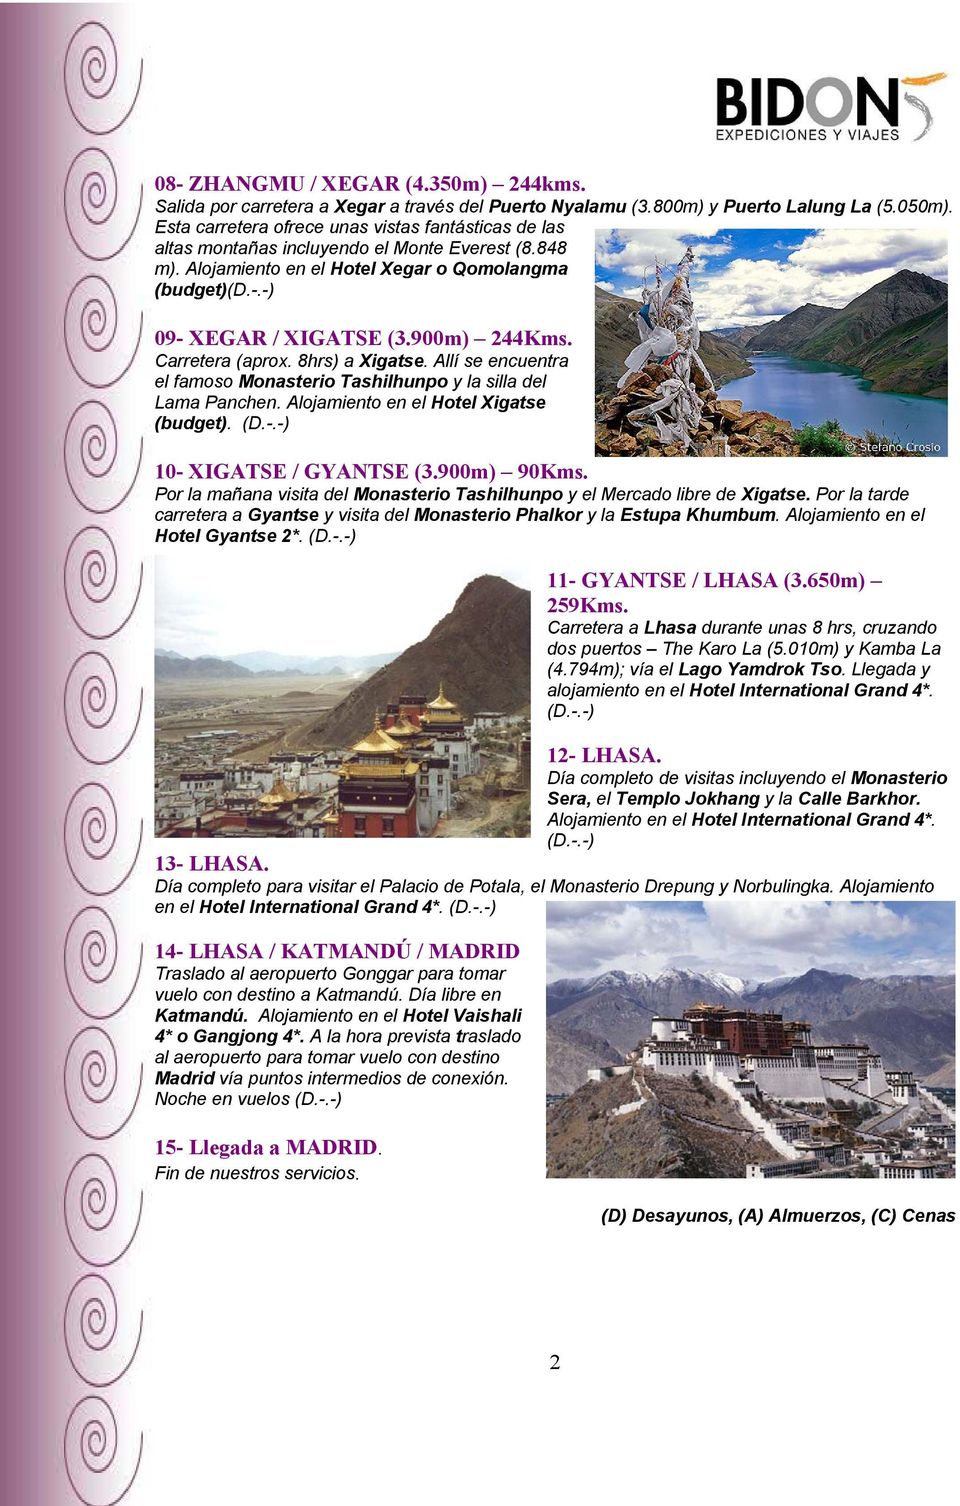 900m) 244Kms. Carretera (aprox. 8hrs) a Xigatse. Allí se encuentra el famoso Monasterio Tashilhunpo y la silla del Lama Panchen. Alojamiento en el Hotel Xigatse (budget). (D.-.